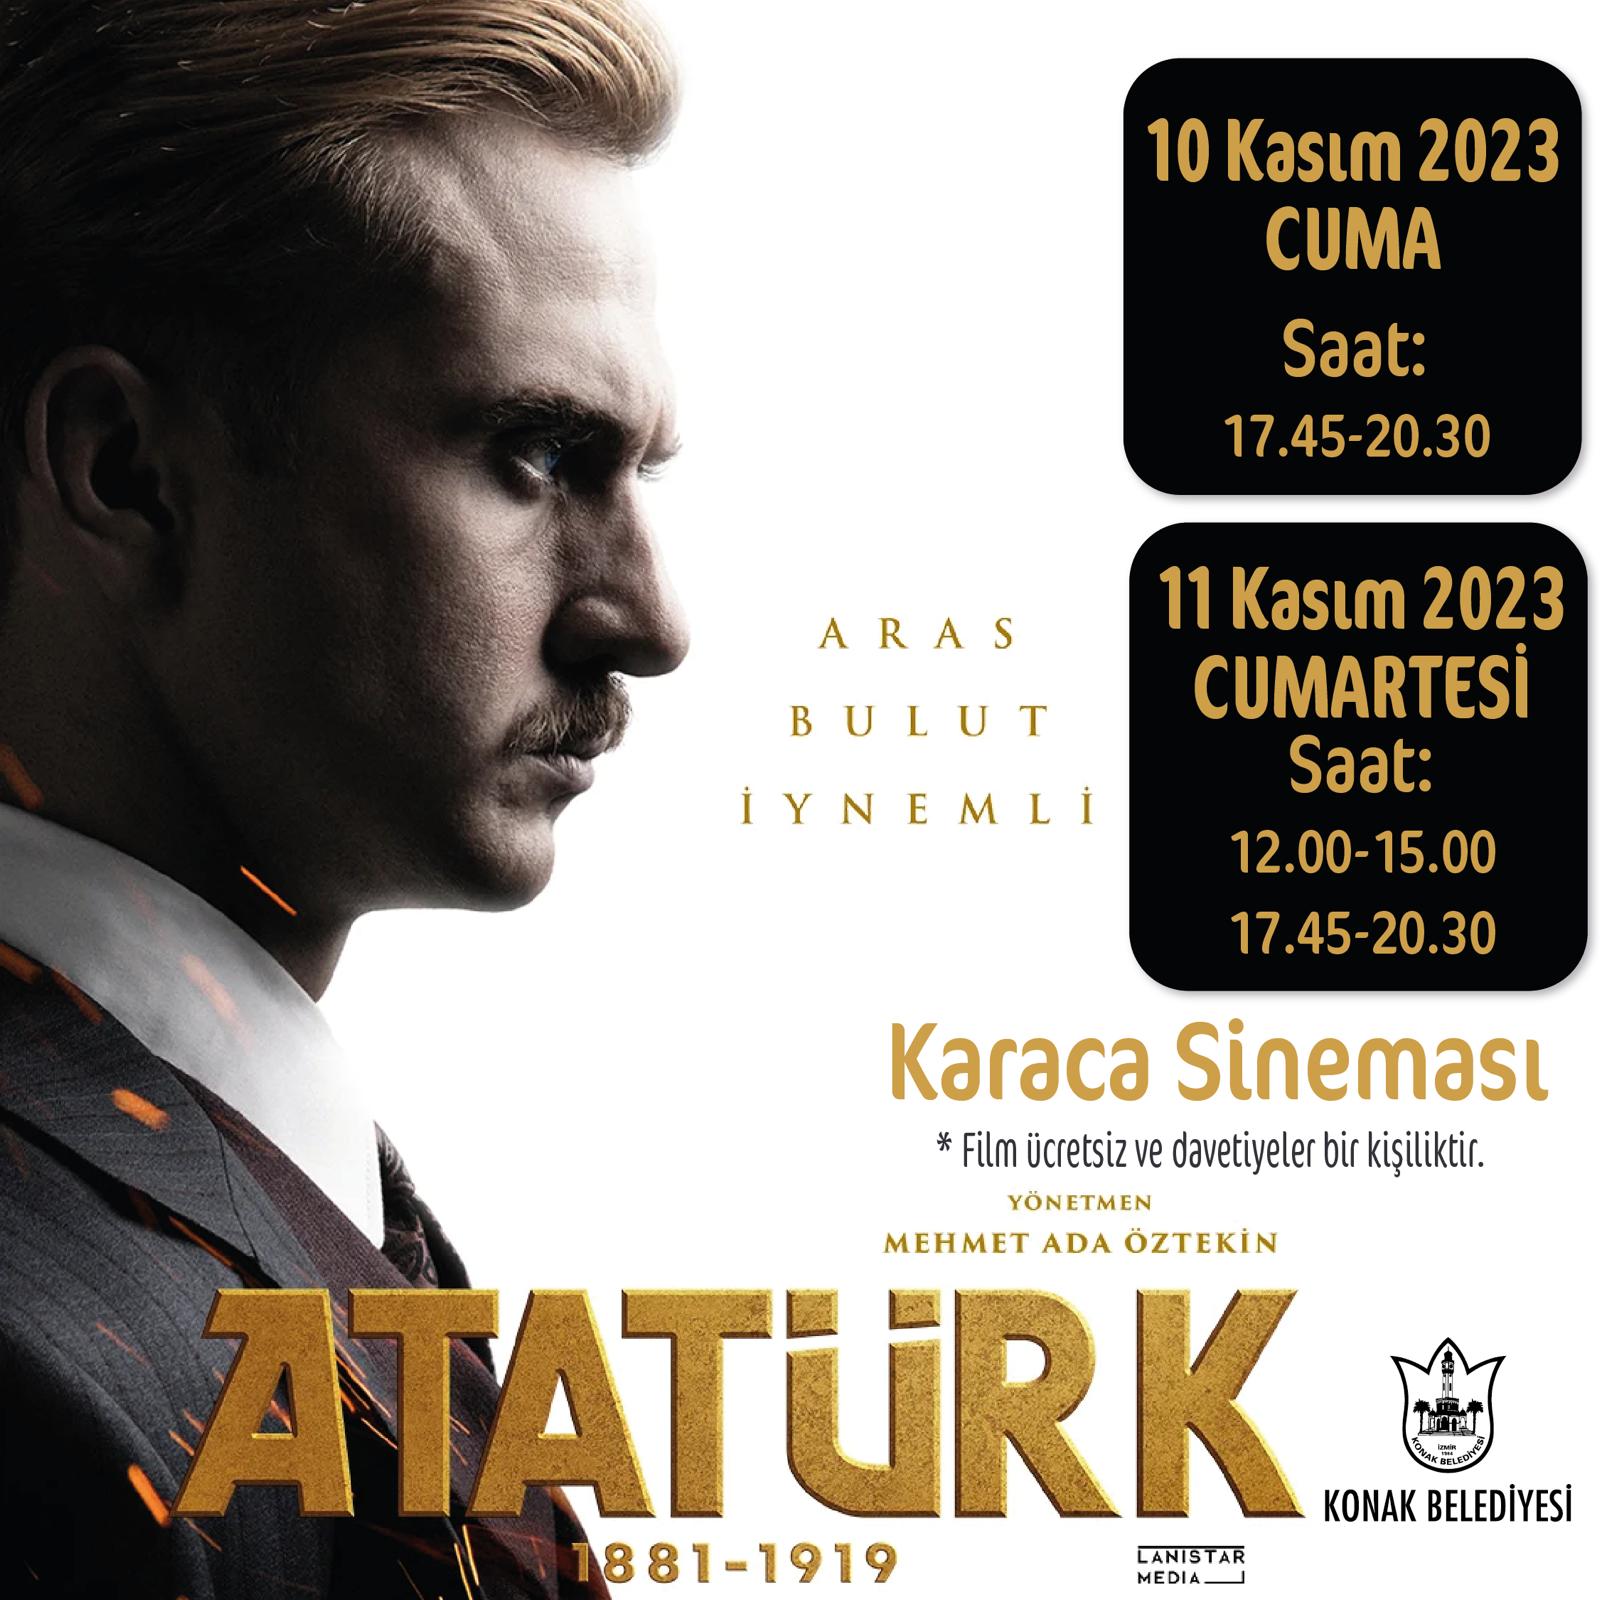 Konaklılar 10 Kasım’da ‘Atatürk’ü izleyecek (1)